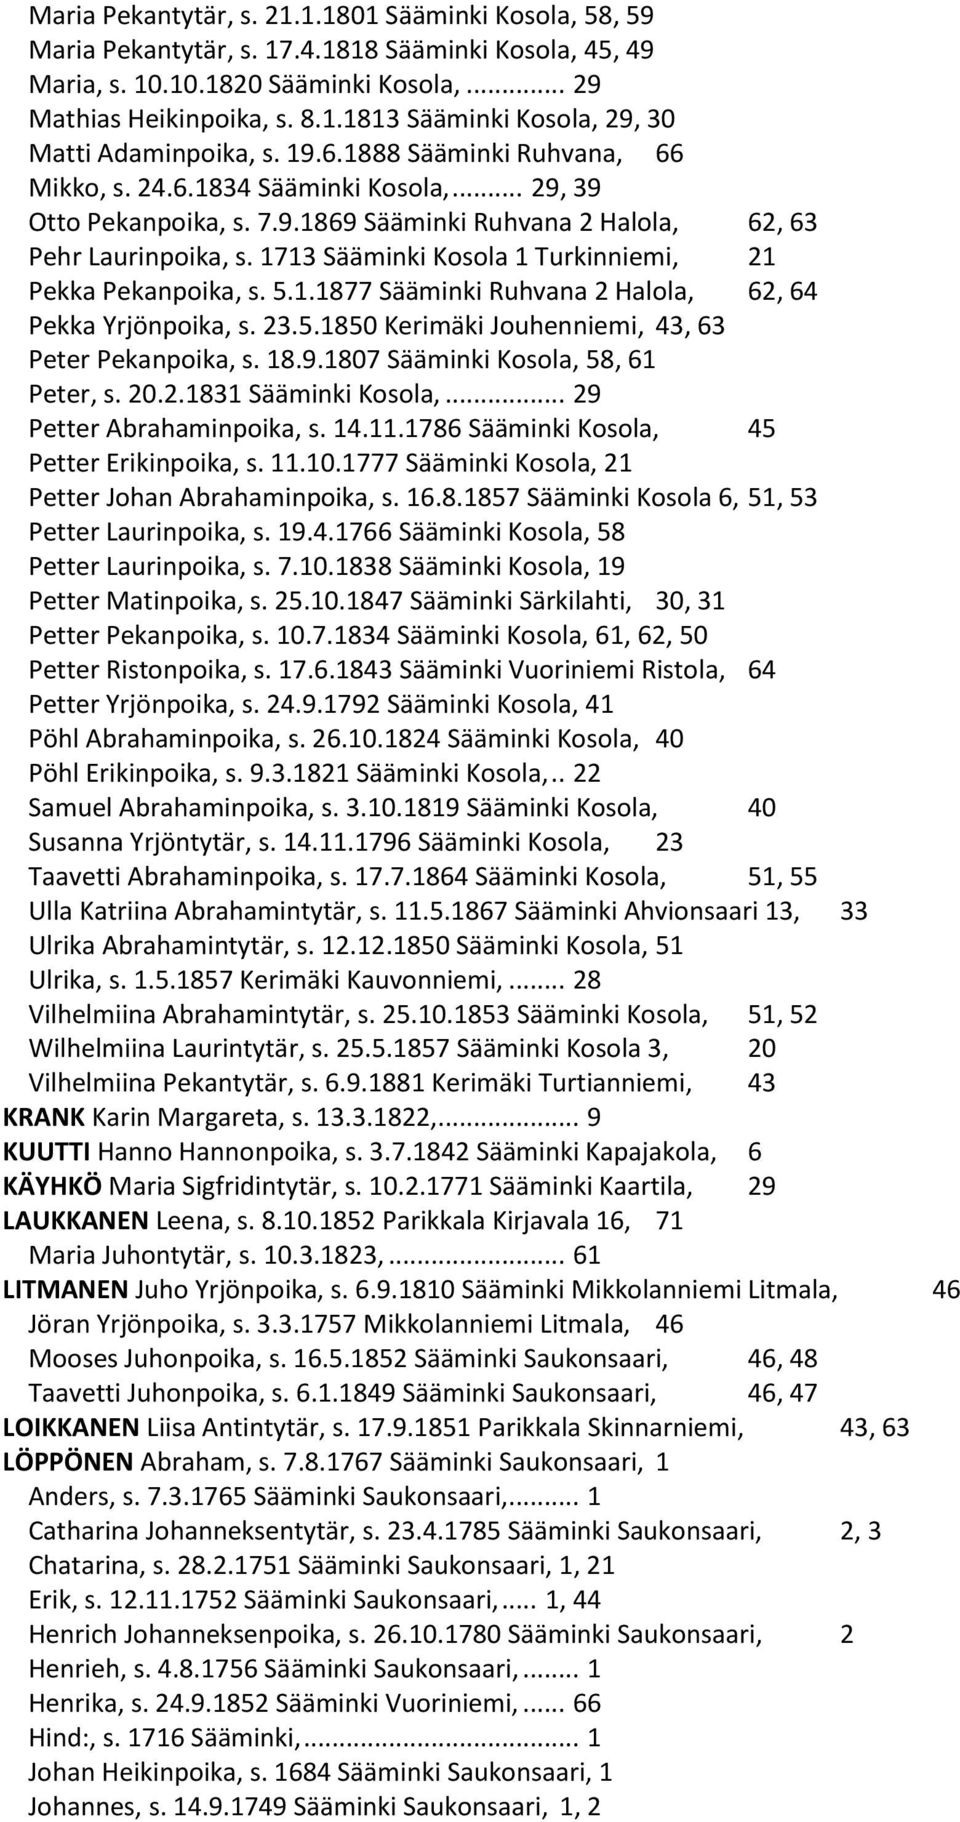 1713 Sääminki Kosola 1 Turkinniemi, 21 Pekka Pekanpoika, s. 5.1.1877 Sääminki Ruhvana 2 Halola, 62, 64 Pekka Yrjönpoika, s. 23.5.1850 Kerimäki Jouhenniemi, 43, 63 Peter Pekanpoika, s. 18.9.